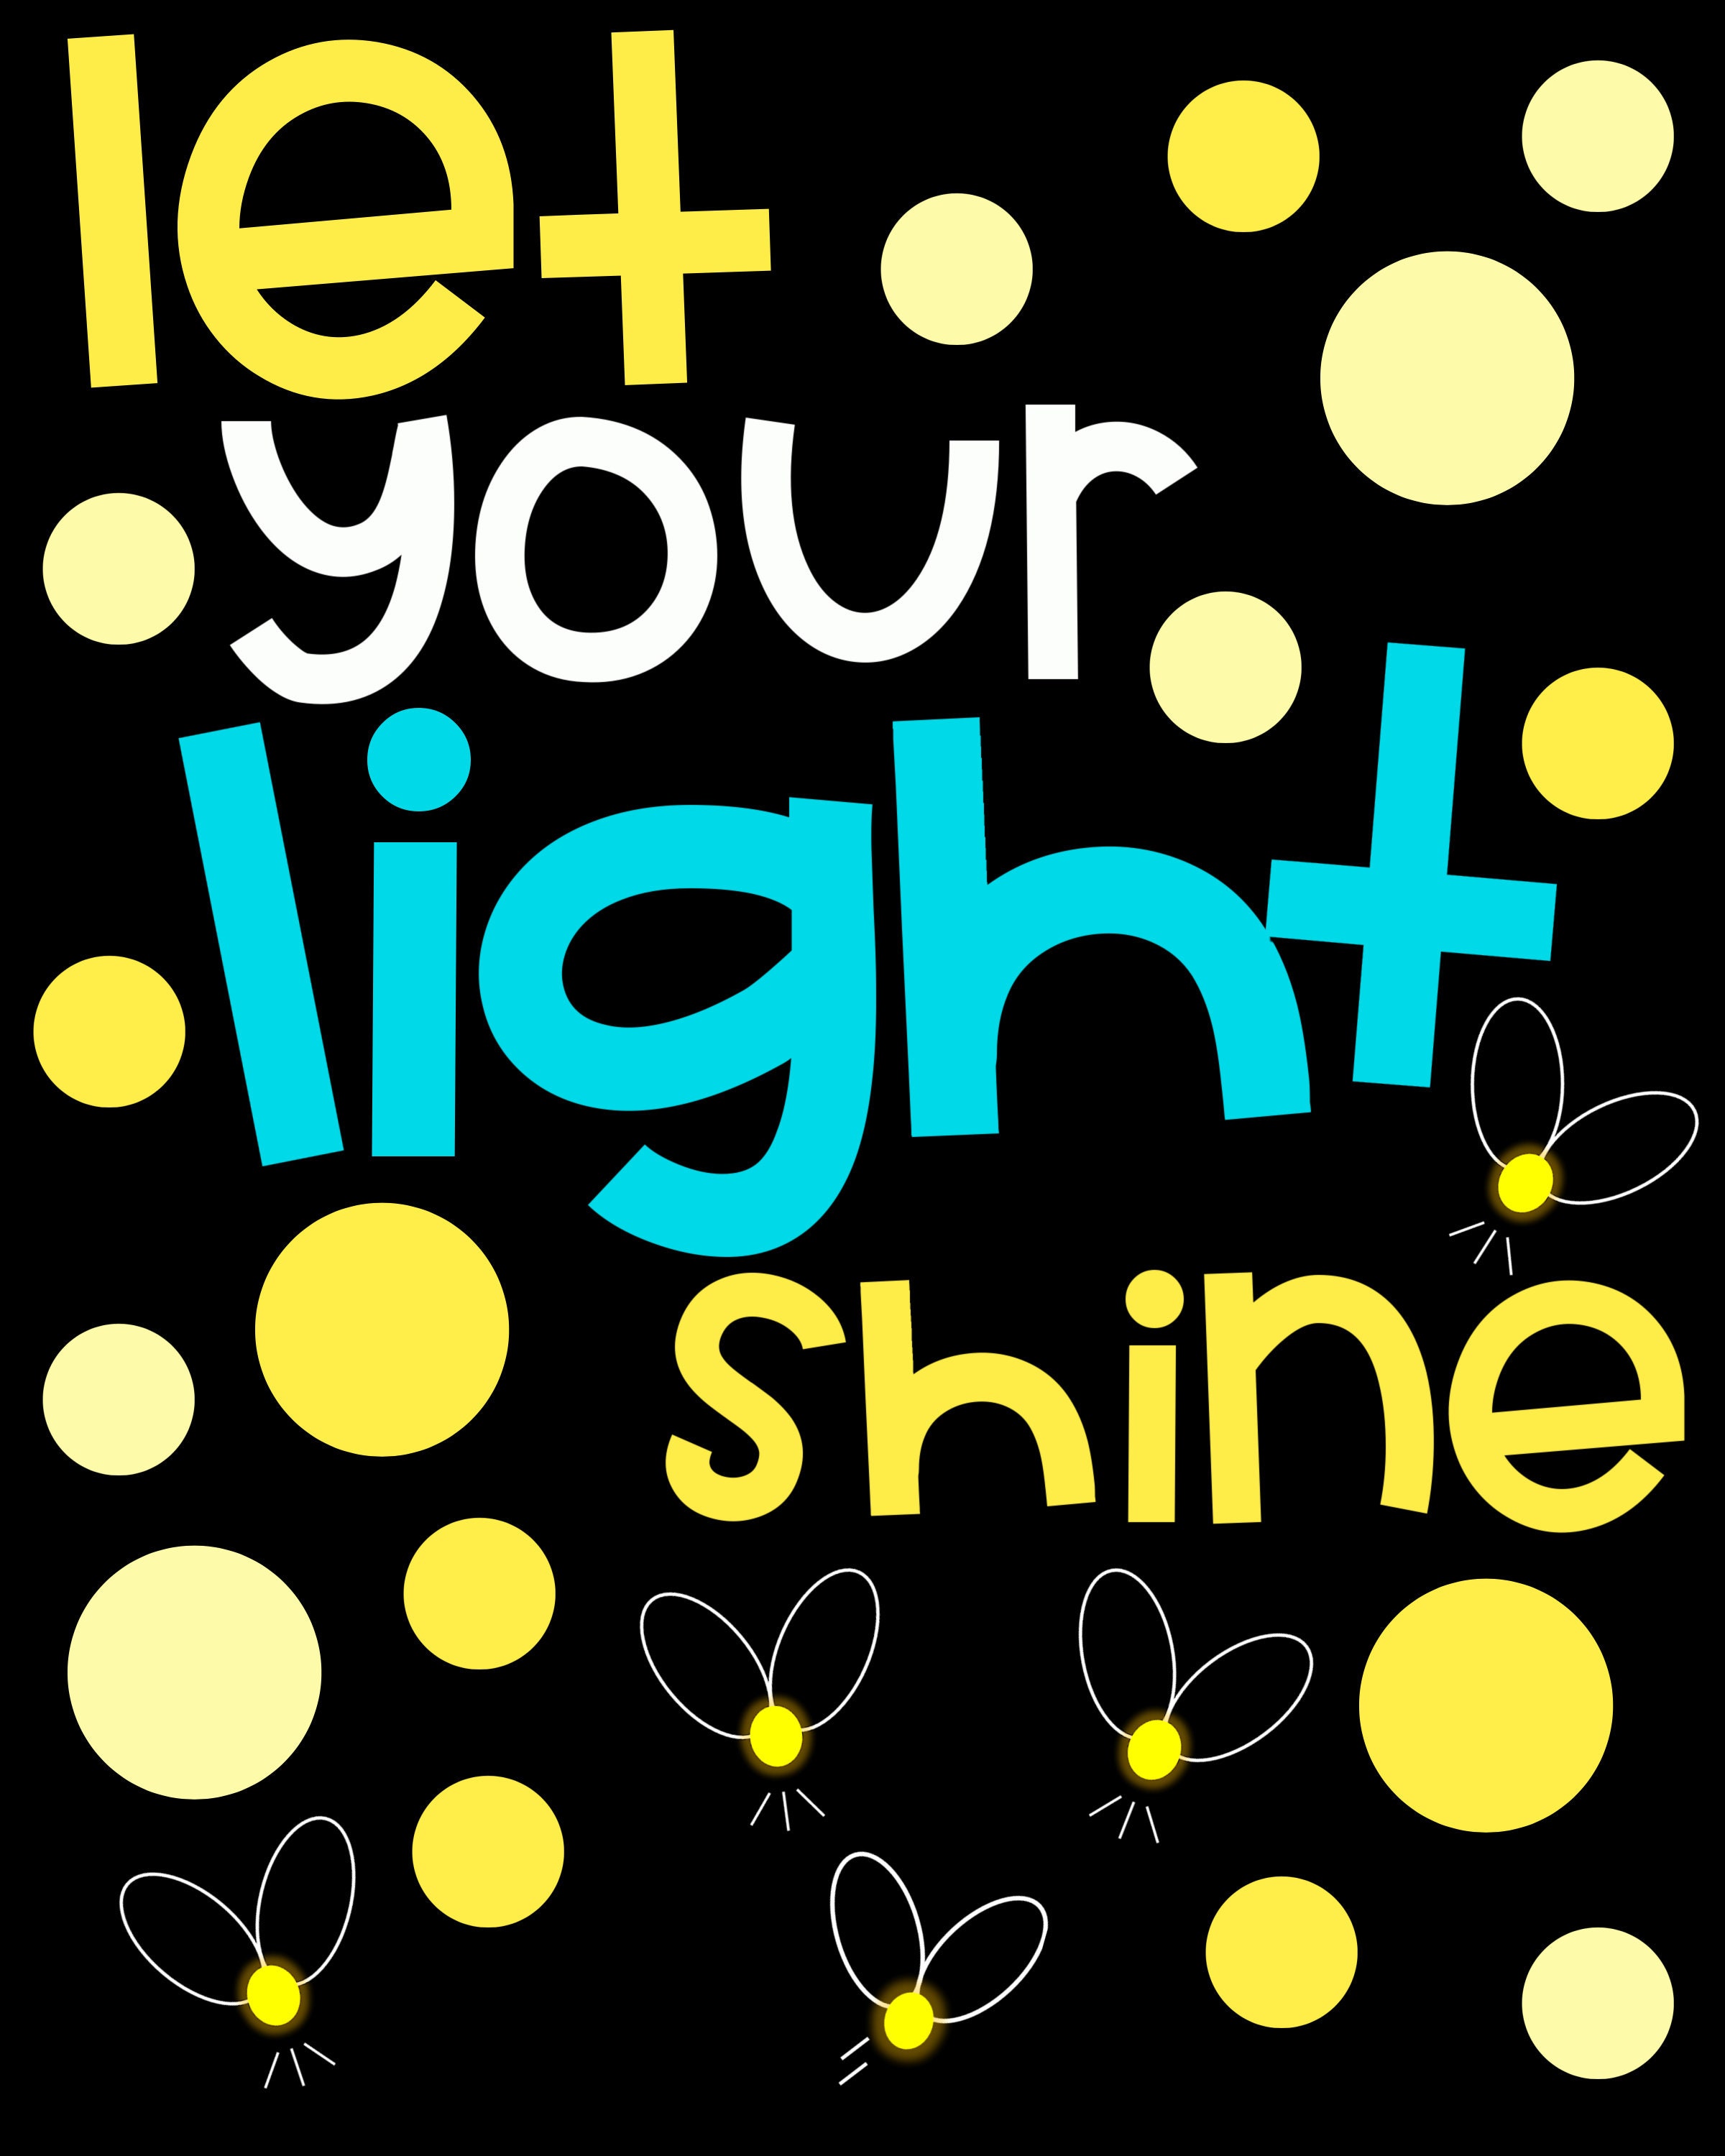 Let Your Light Shine Bulletin Board Kit, Door Decoration Set, or Poster